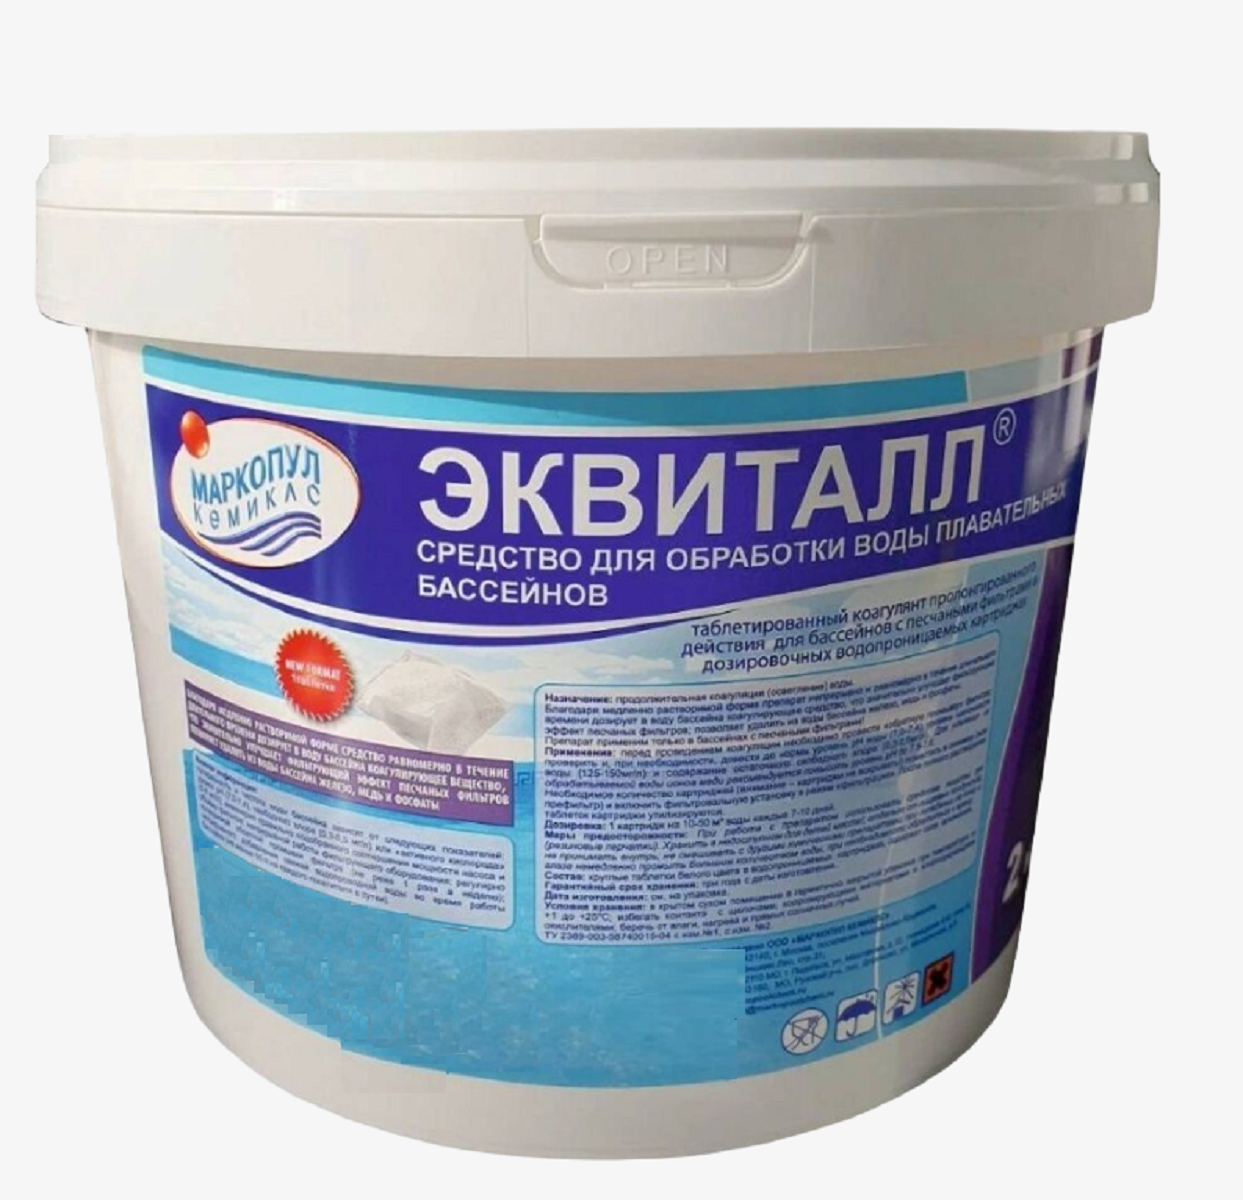 Эквиталл таблетки для осветления воды Маркопул кемиклс 2 кг